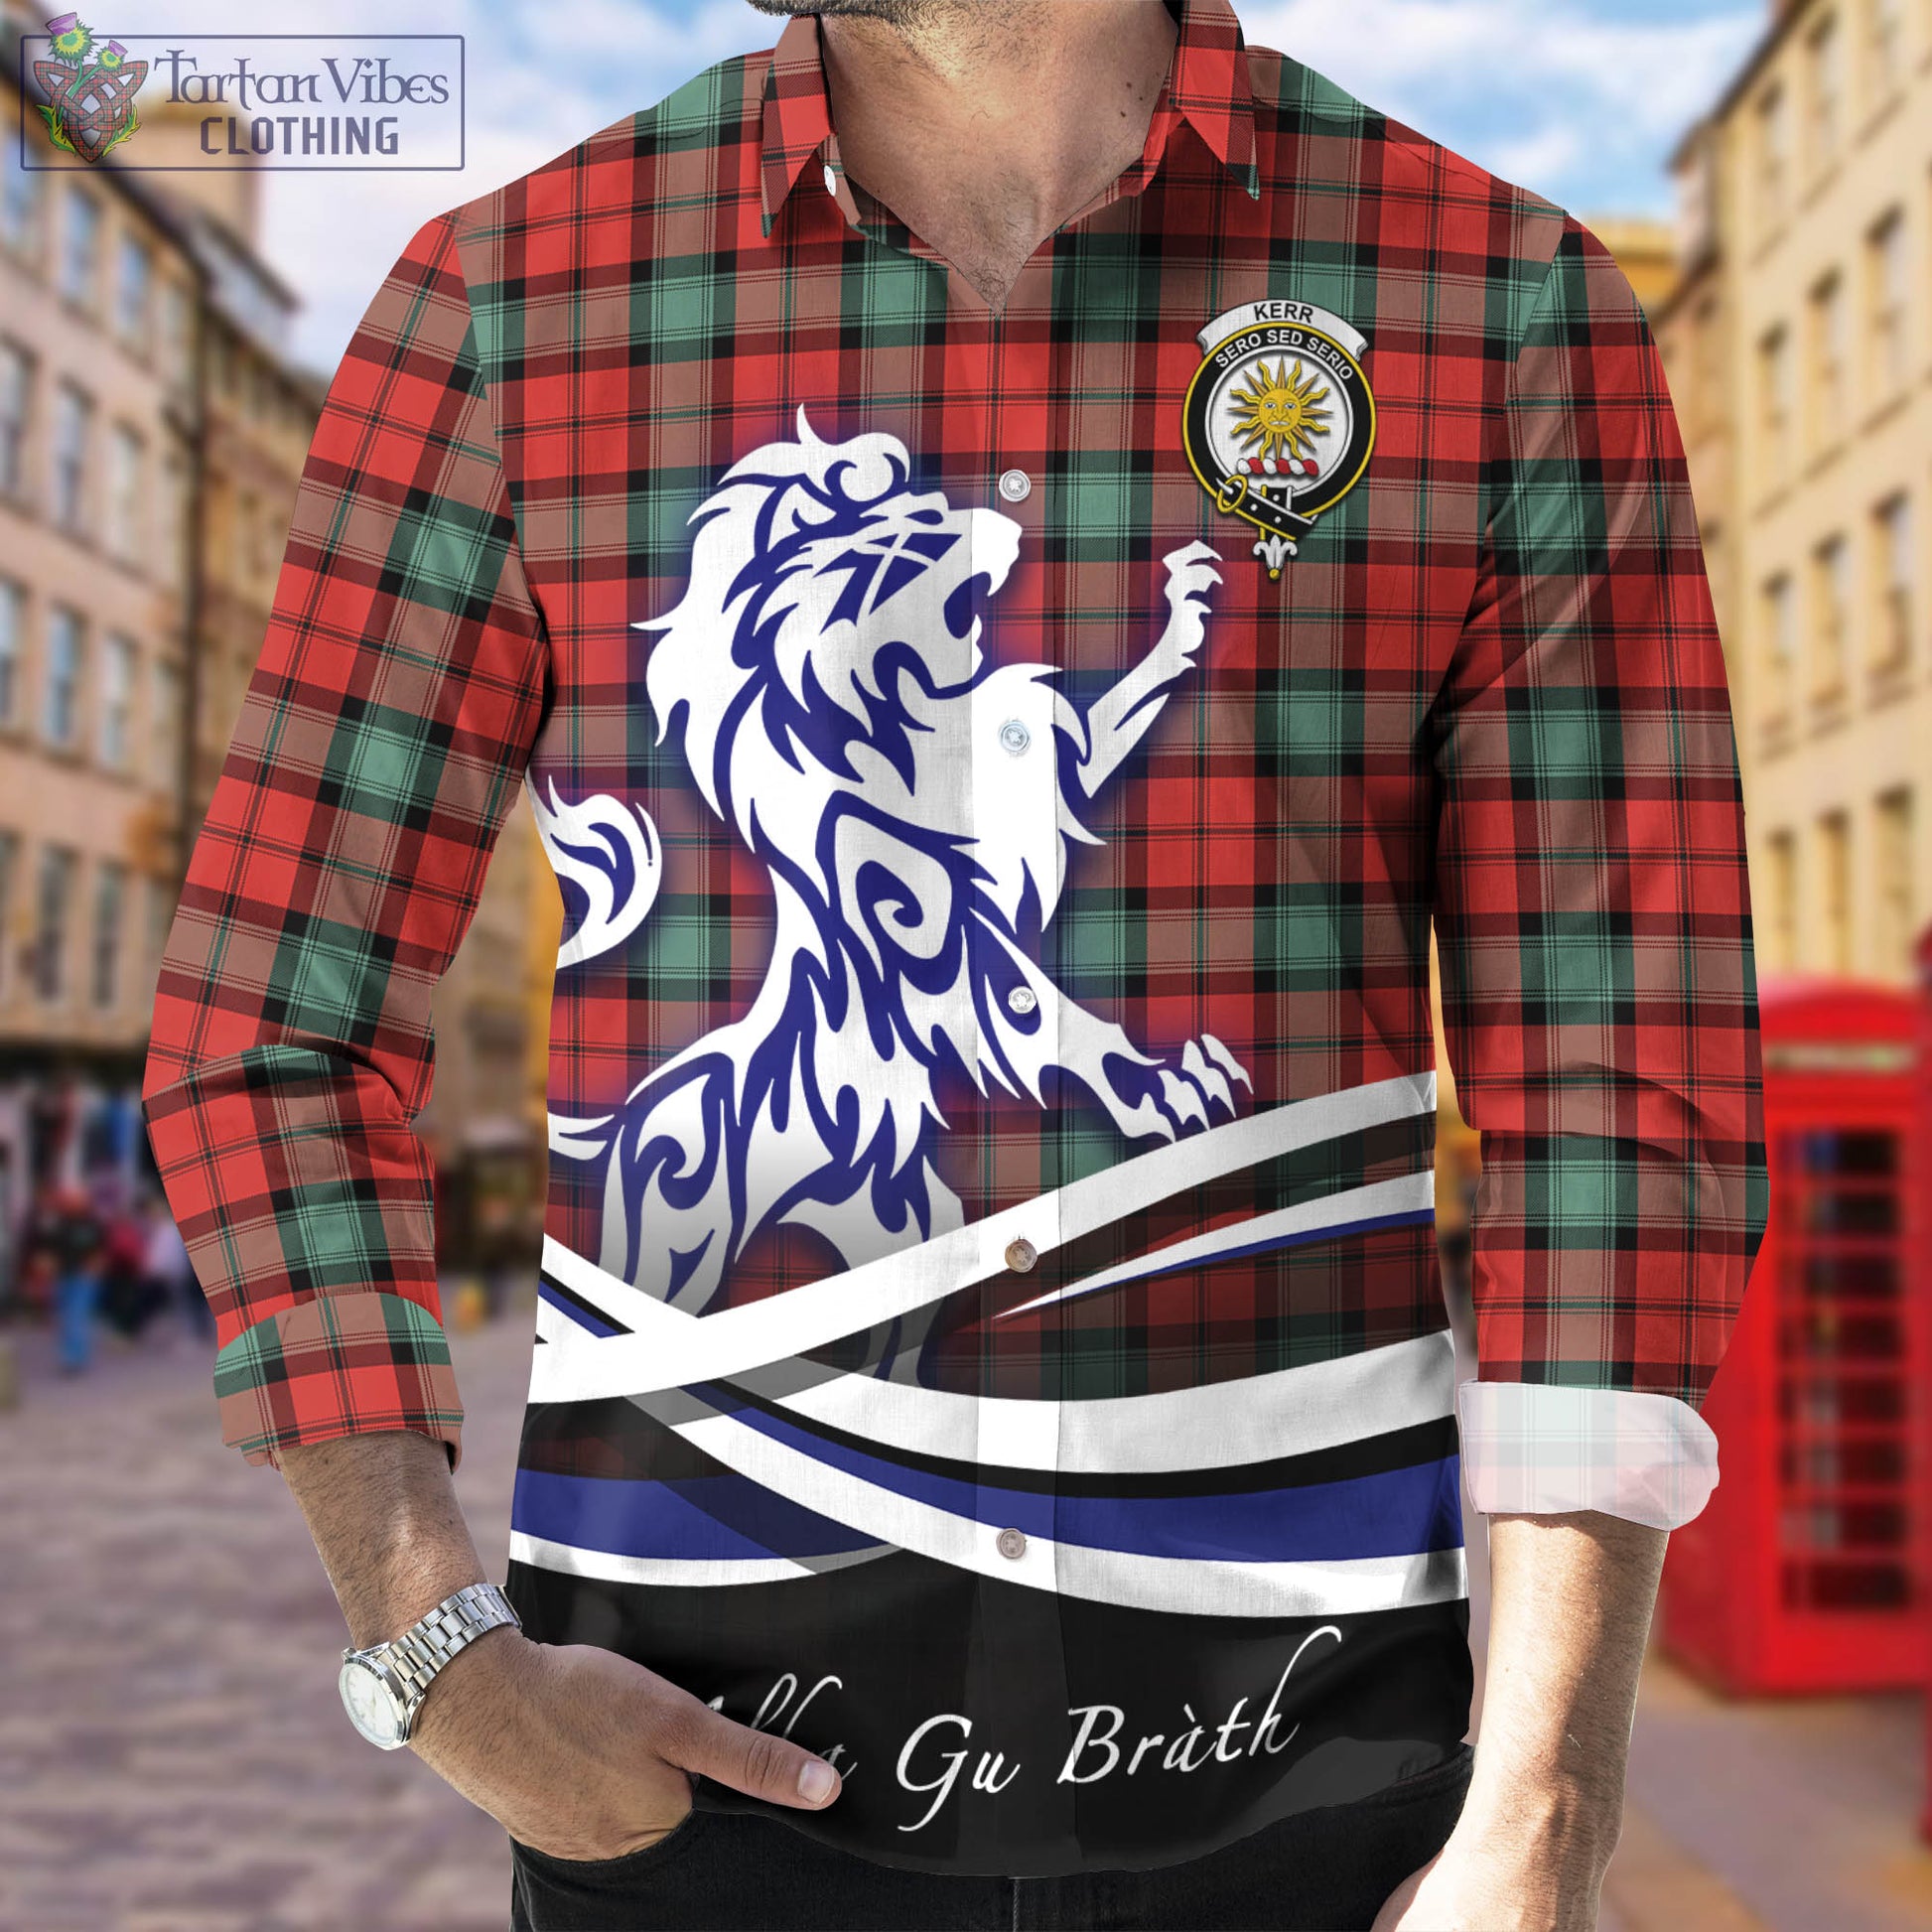 kerr-ancient-tartan-long-sleeve-button-up-shirt-with-alba-gu-brath-regal-lion-emblem